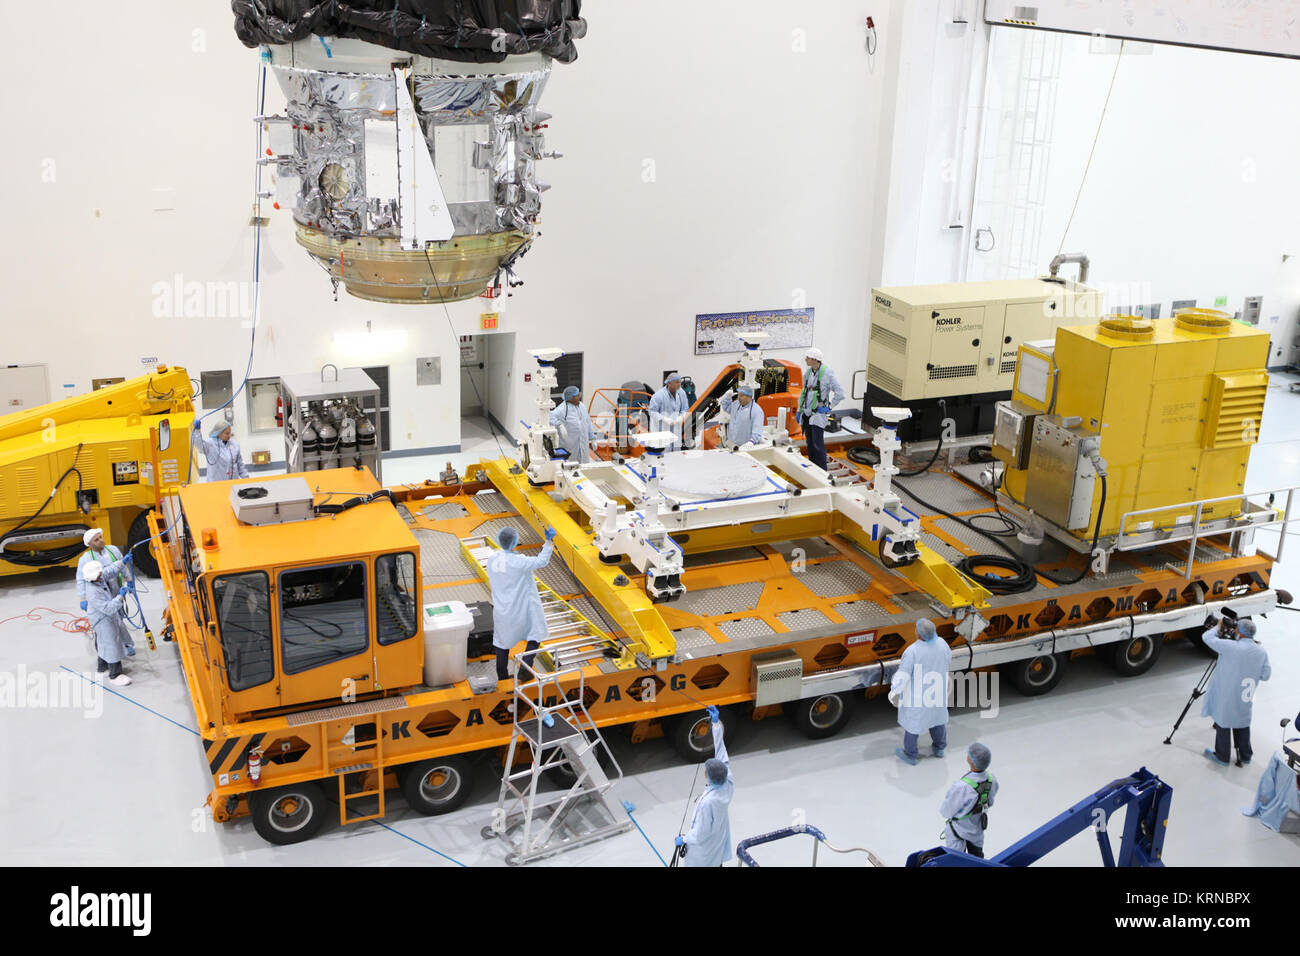 In der Space Station Processing Facility Hochregallager des NASA Kennedy Space Center in Florida, Techniker überwachen die Fortschritte als Kran bewegt die Orbital ATK CYGNUS unter Druck cargo Modul näher an der KAMAG Transporter. Das Modul wird auf der Transporter gesichert werden und die Nutzlast gefährliche Wartung Einrichtung verschoben. Die Orbital ATK CRS-7 Commercial resupply Services Mission zur Internationalen Raumstation soll auf einem United Launch Alliance Atlas-V-Rakete vom Weltraum aus komplexen 41 Start in Cape Canaveral Air Force Station am 19. März 2017 zu starten. CYGNUS wird Tausende liefern Stockfoto